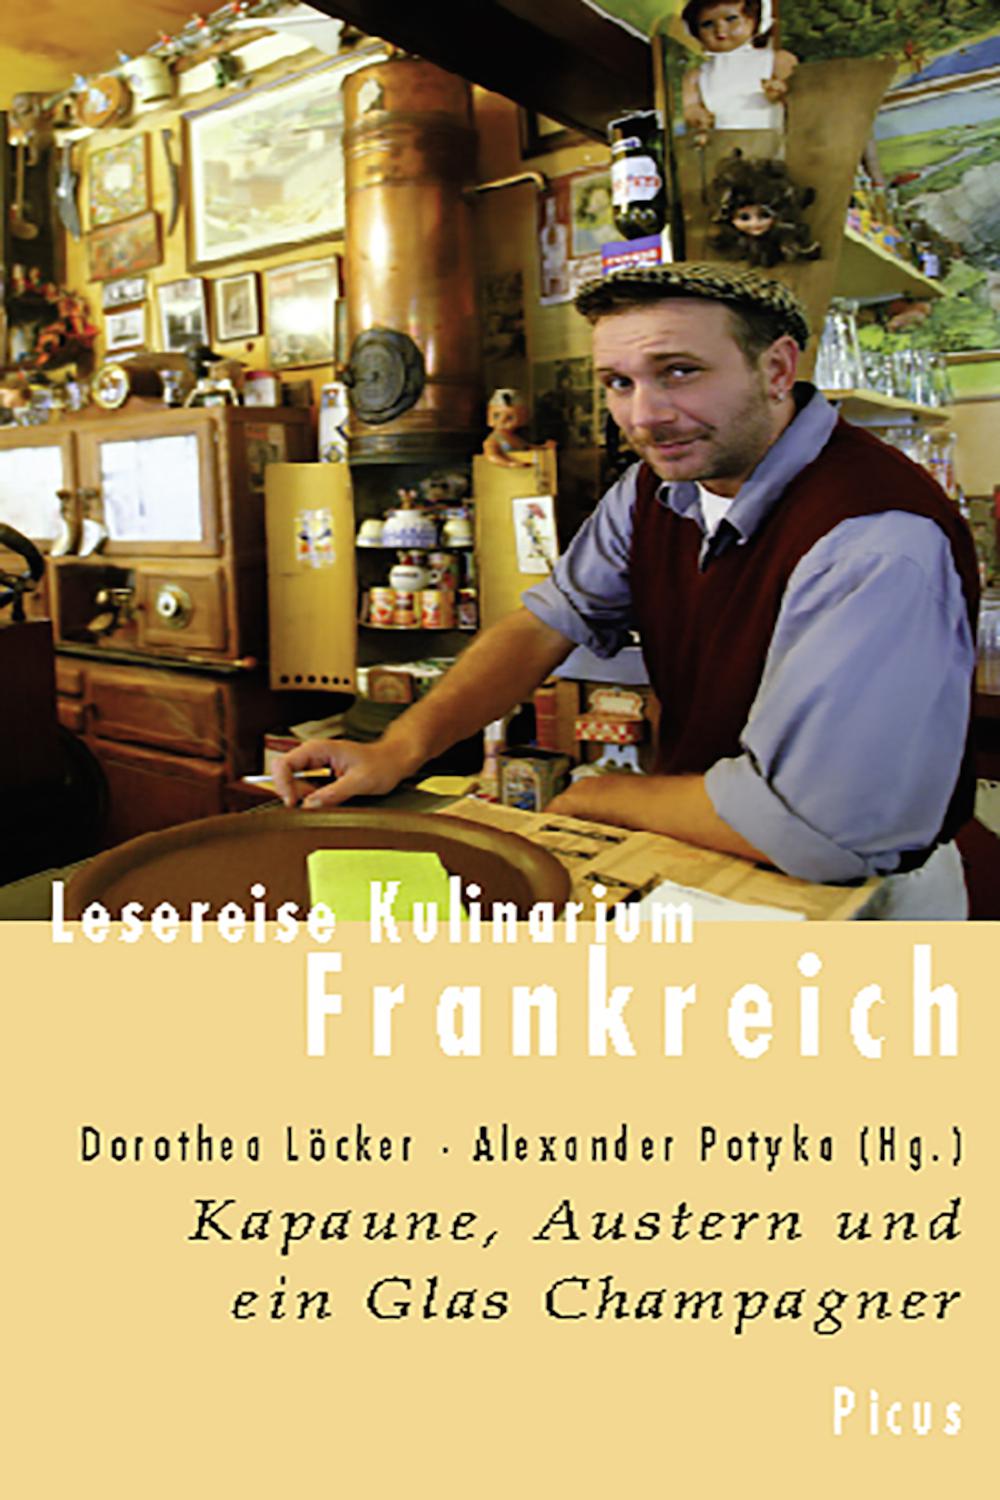 Lesereise Kulinarium Frankreich - Dorothea Löcker, Alexander Potyka